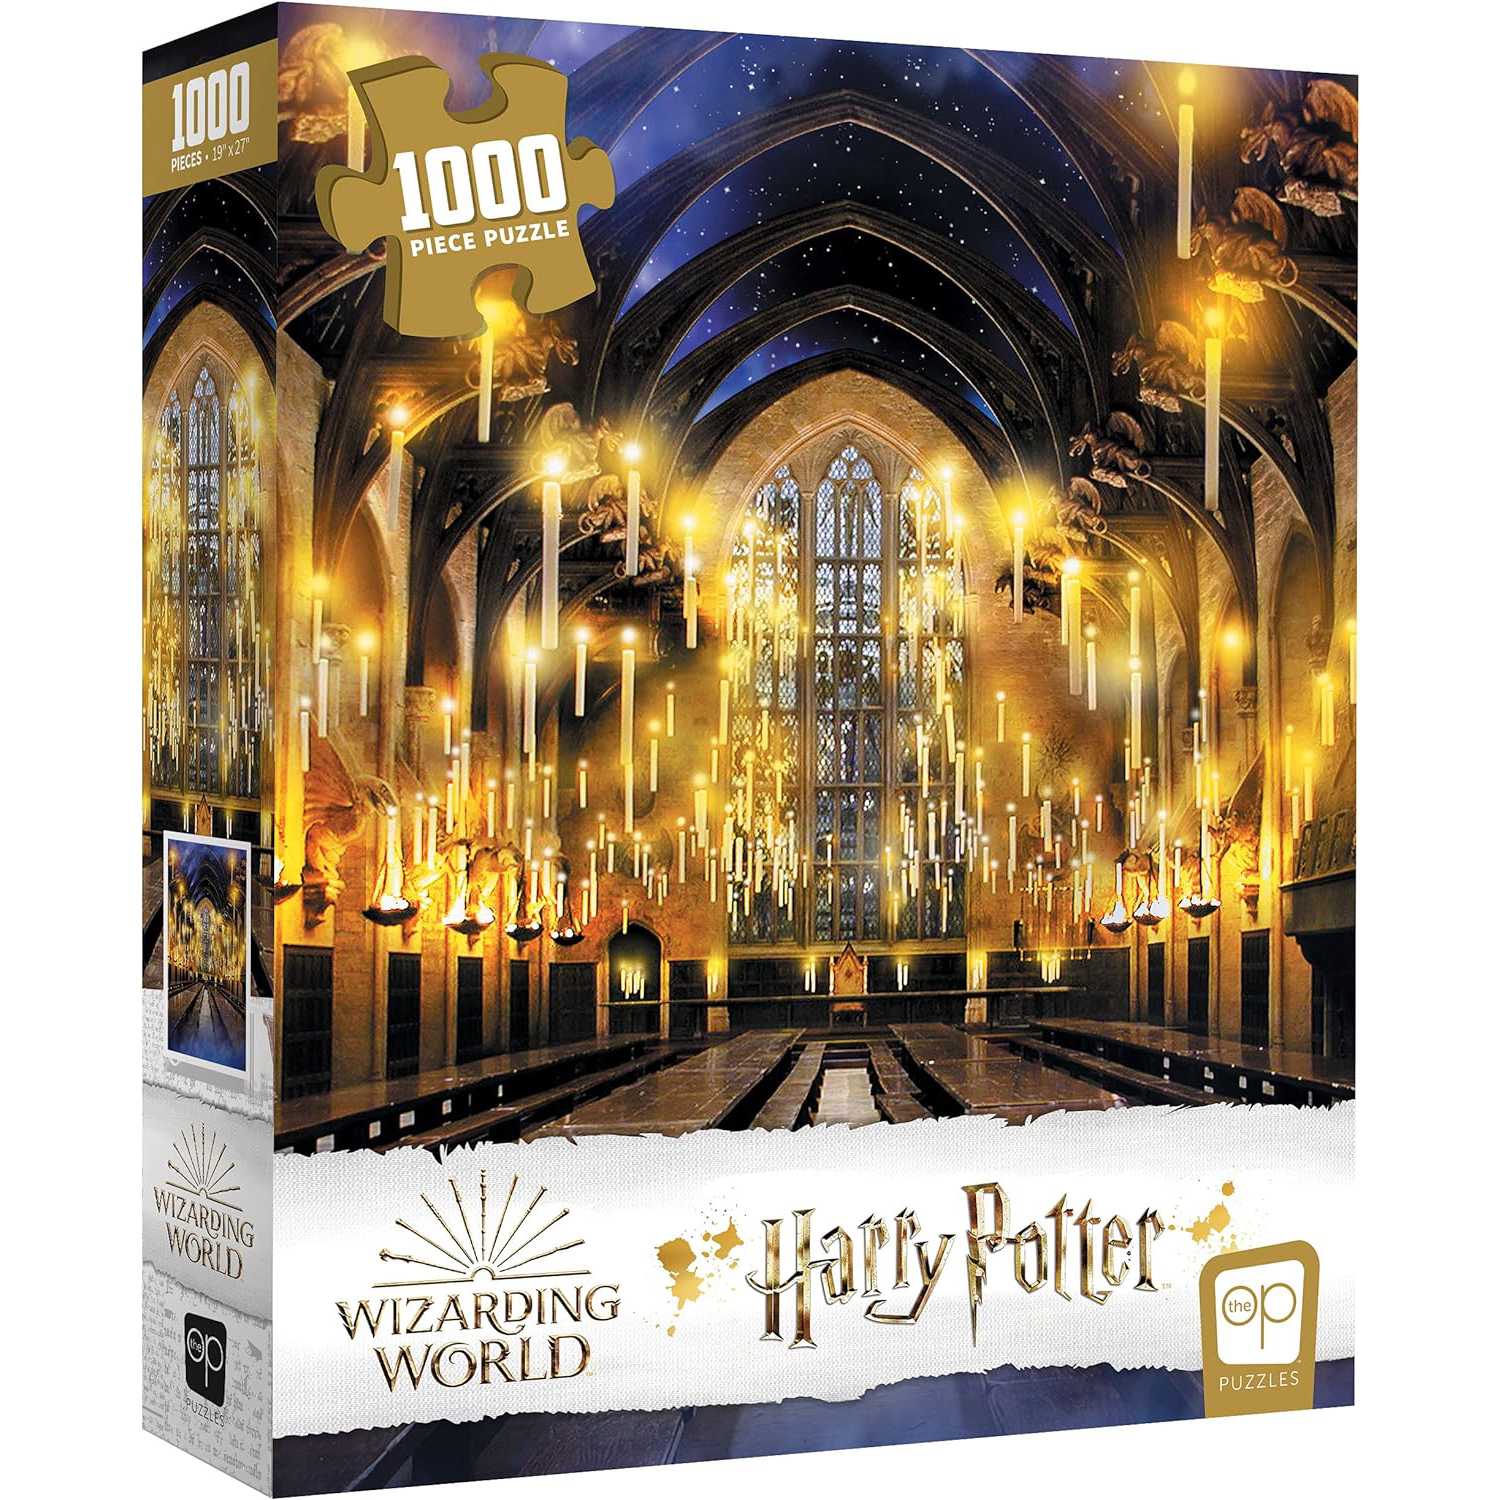 Harry Potter Puzzle Hogwarts Castle 1000 Piece Jigsaw Puzzle 20 x